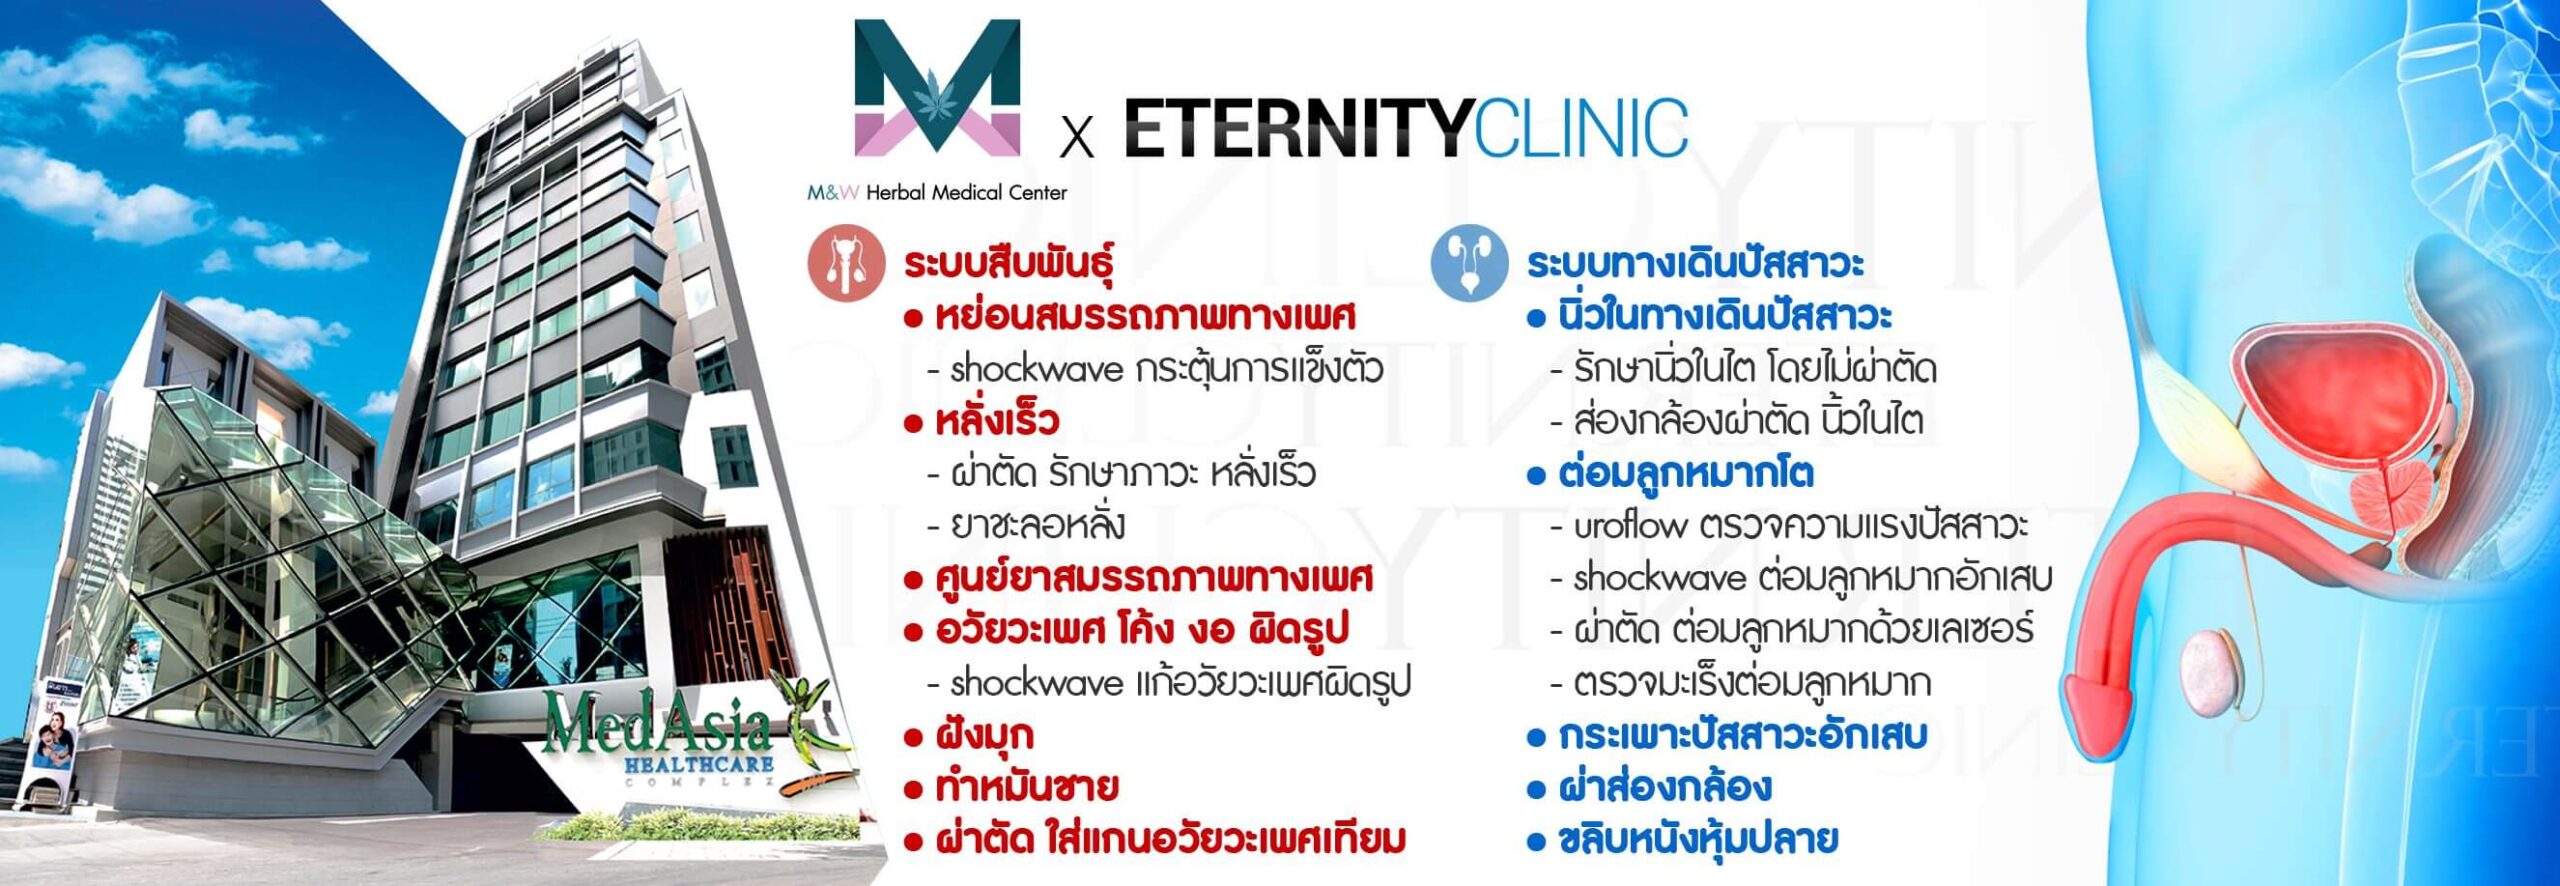 Eternity Clinic – สมรรถภาพทางเพศ ระบบทางเดินปัสสาวะ